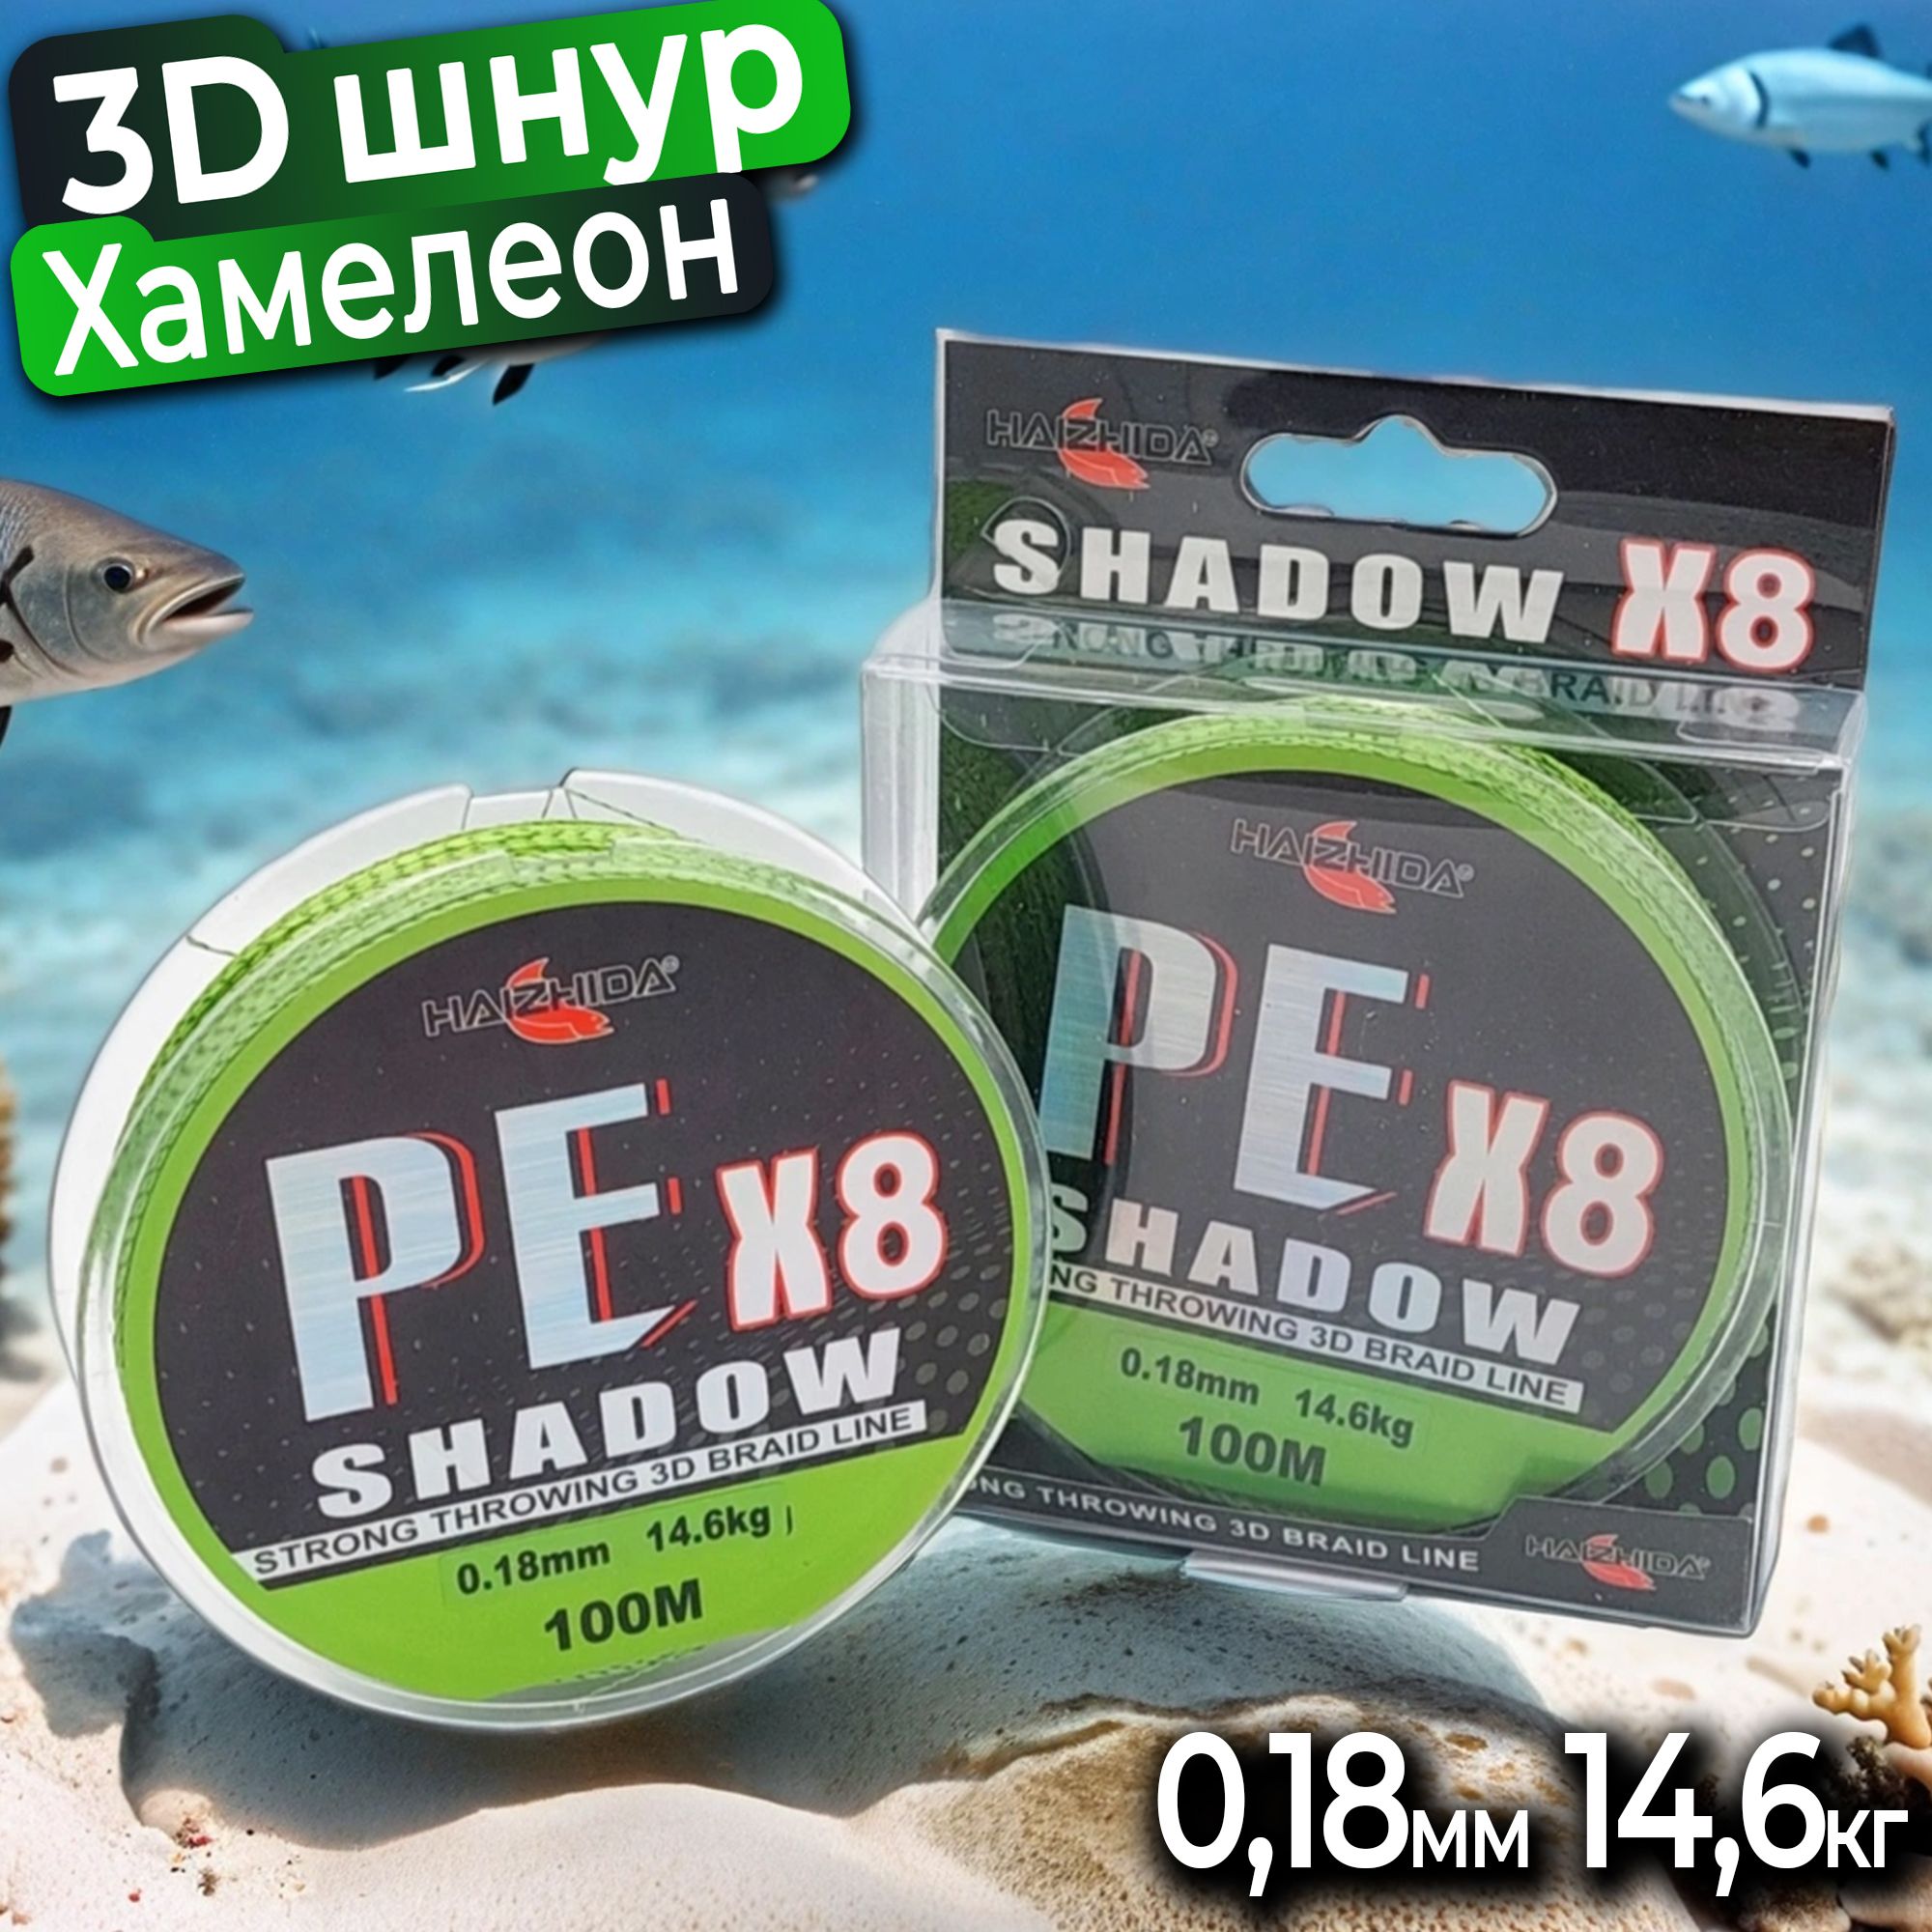 3DПлетеныйшнурдлярыбалкиShadowPEx8хамелеон0,18мм/14,6кг/100м8нитей,3Дкамуфляж,незаметенвводе,дляспиннинга,троллинга,нафидер